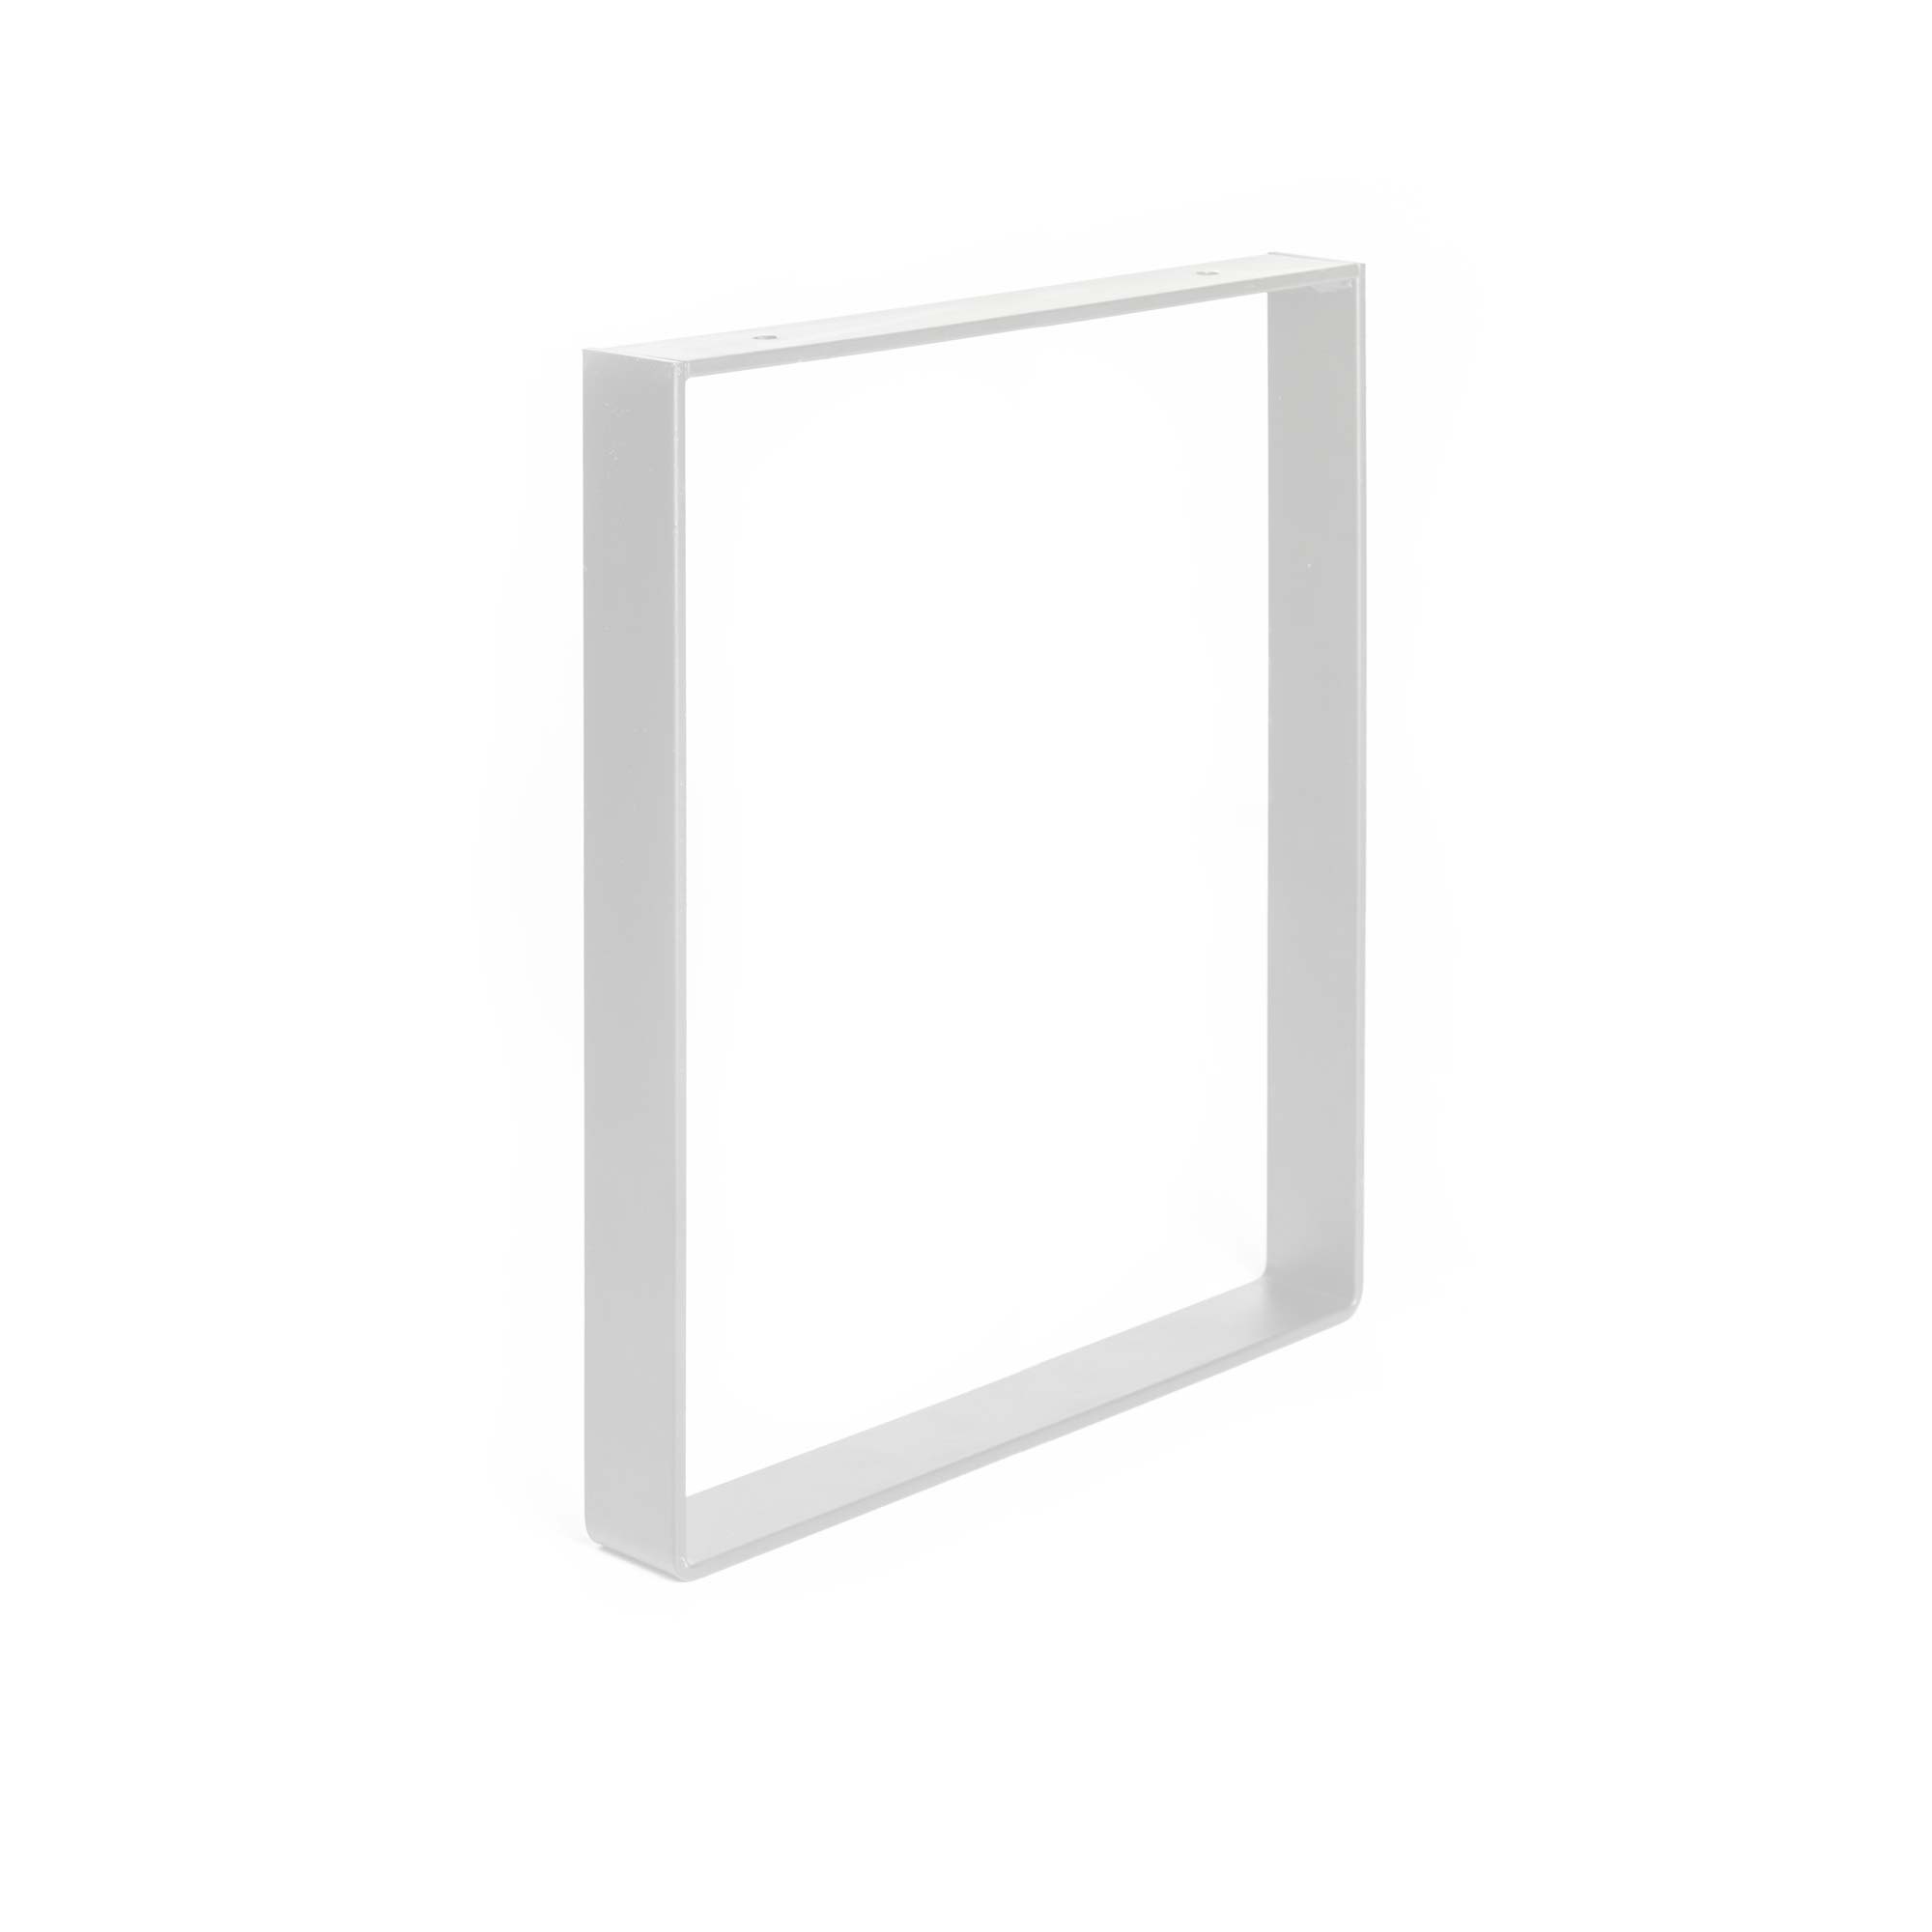 Pied industriel pour meuble en acier blanche à pores |Dimensions 350*40*385mm | Hauteur : 38,5 cm | 1 unité